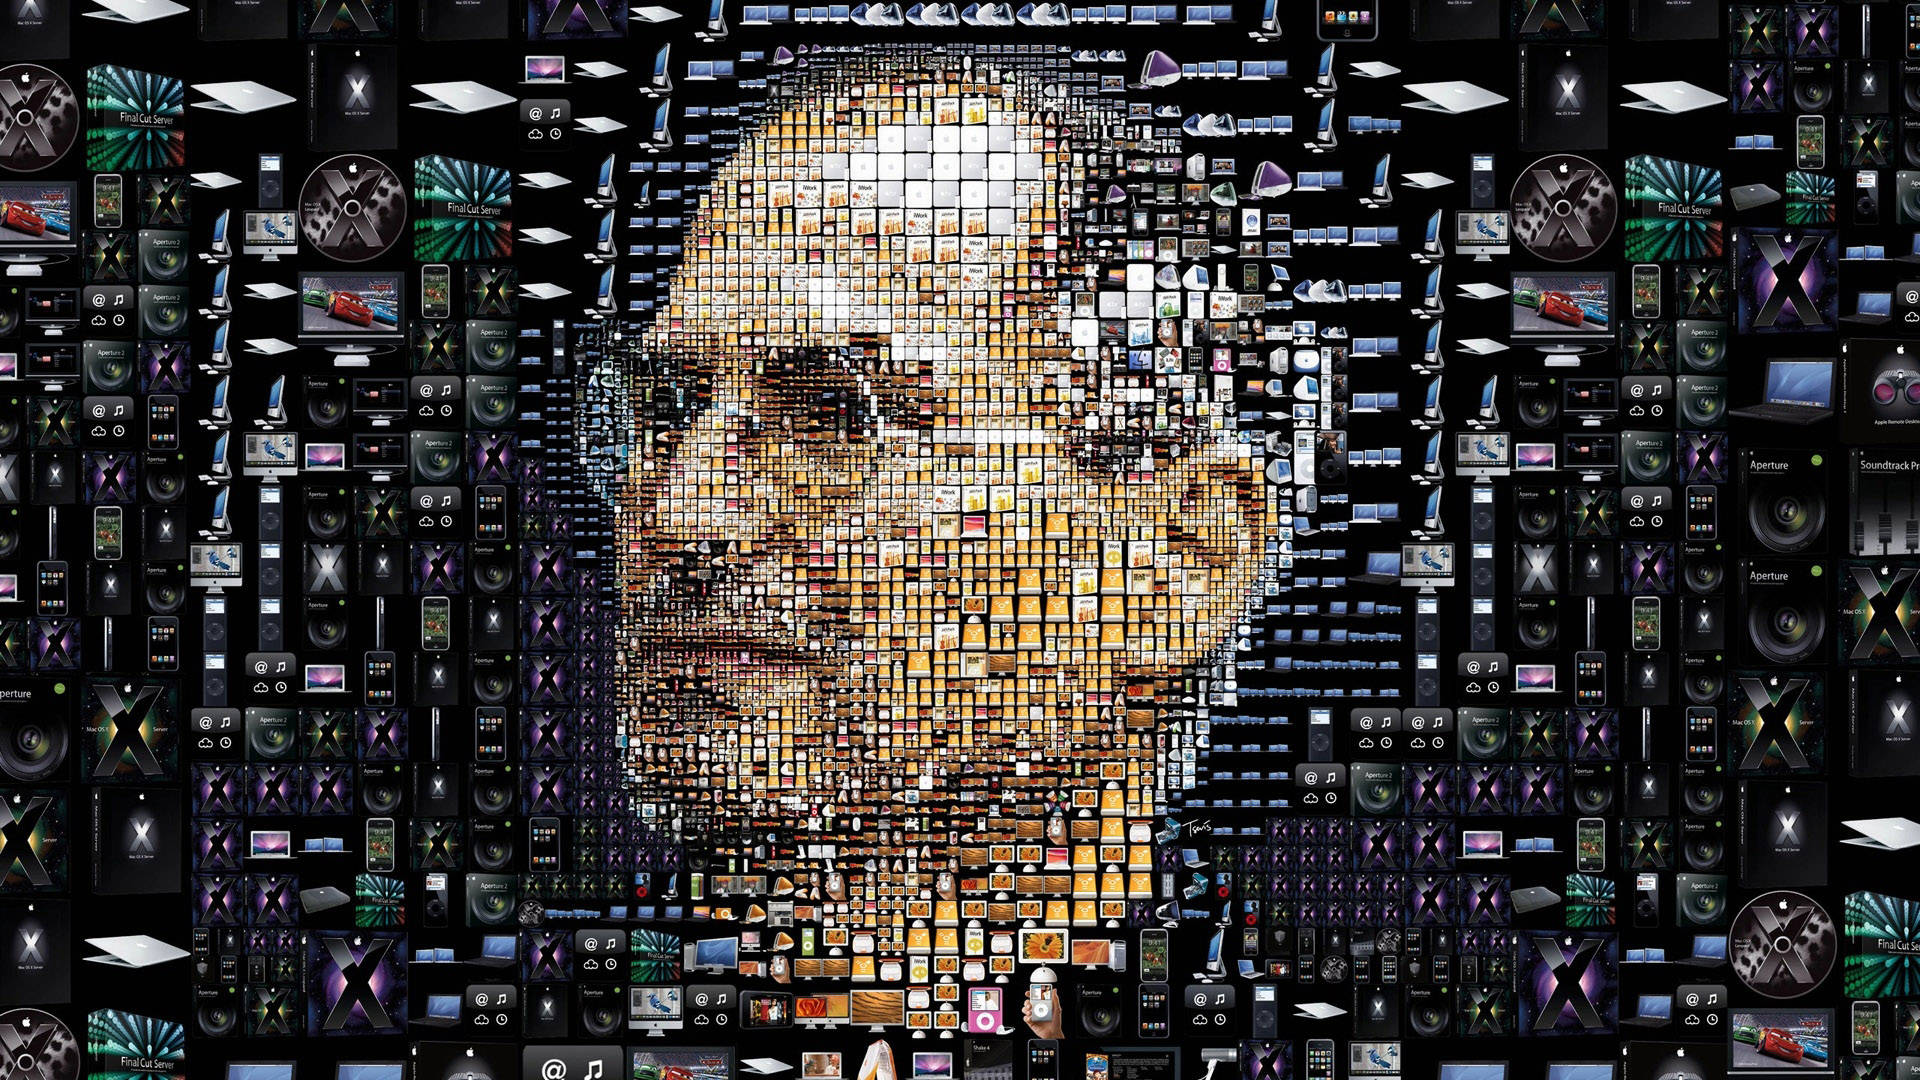 Hd Engineering Steve Jobs Collage